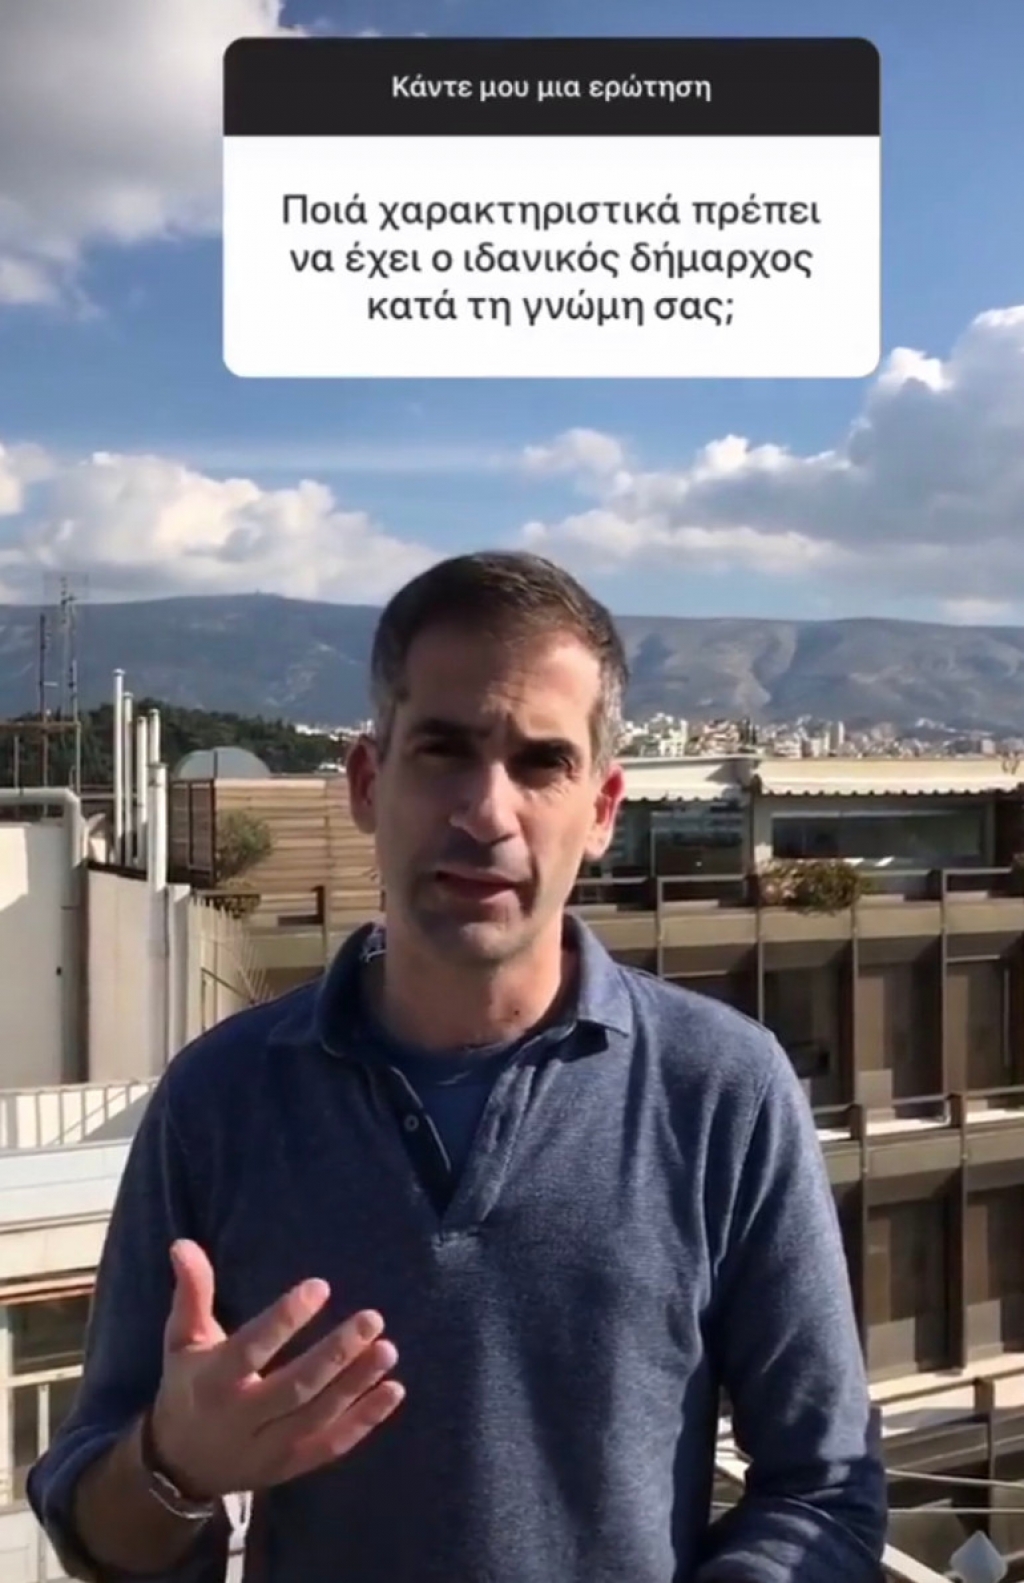 Ο Κώστας Μπακογιάννης απαντά μέσω Instagram σε ερωτήματα  για την Αθήνα (Βίντεο)